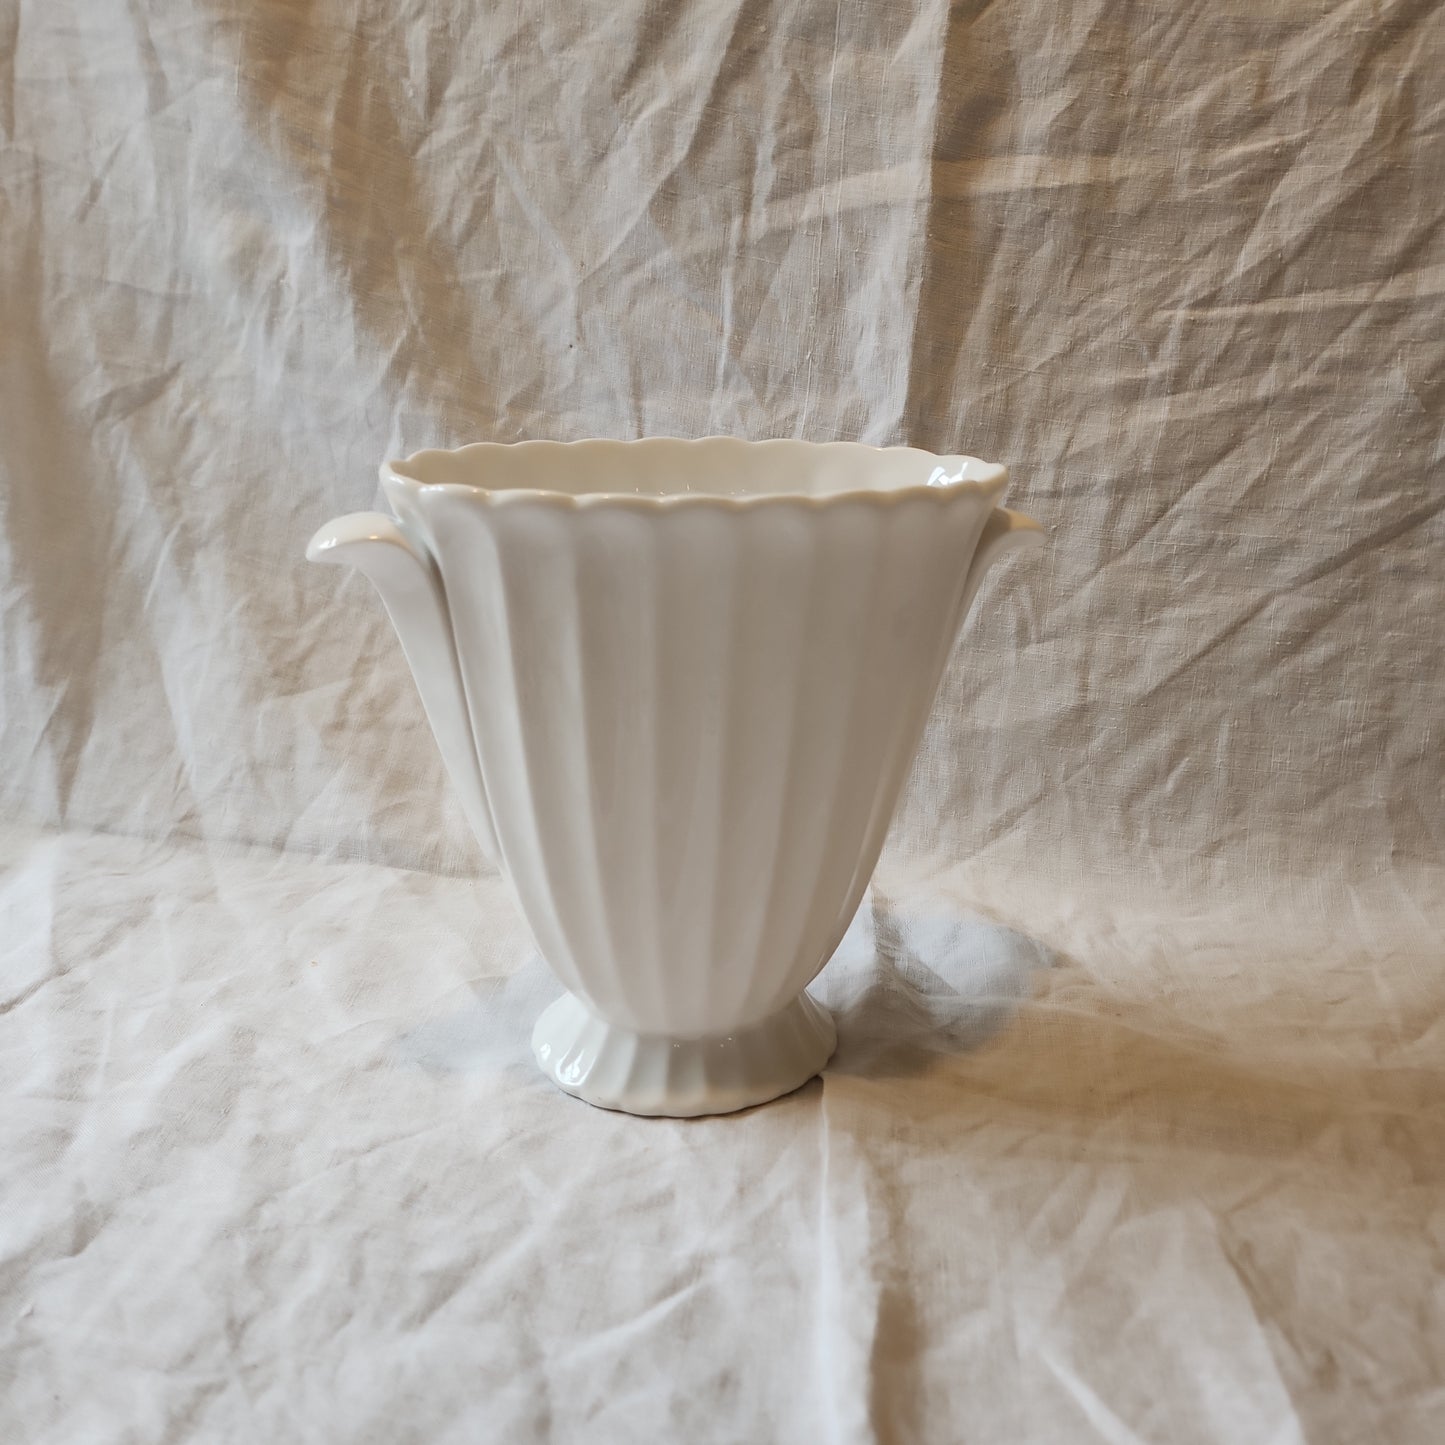 High quality white porcelain vase